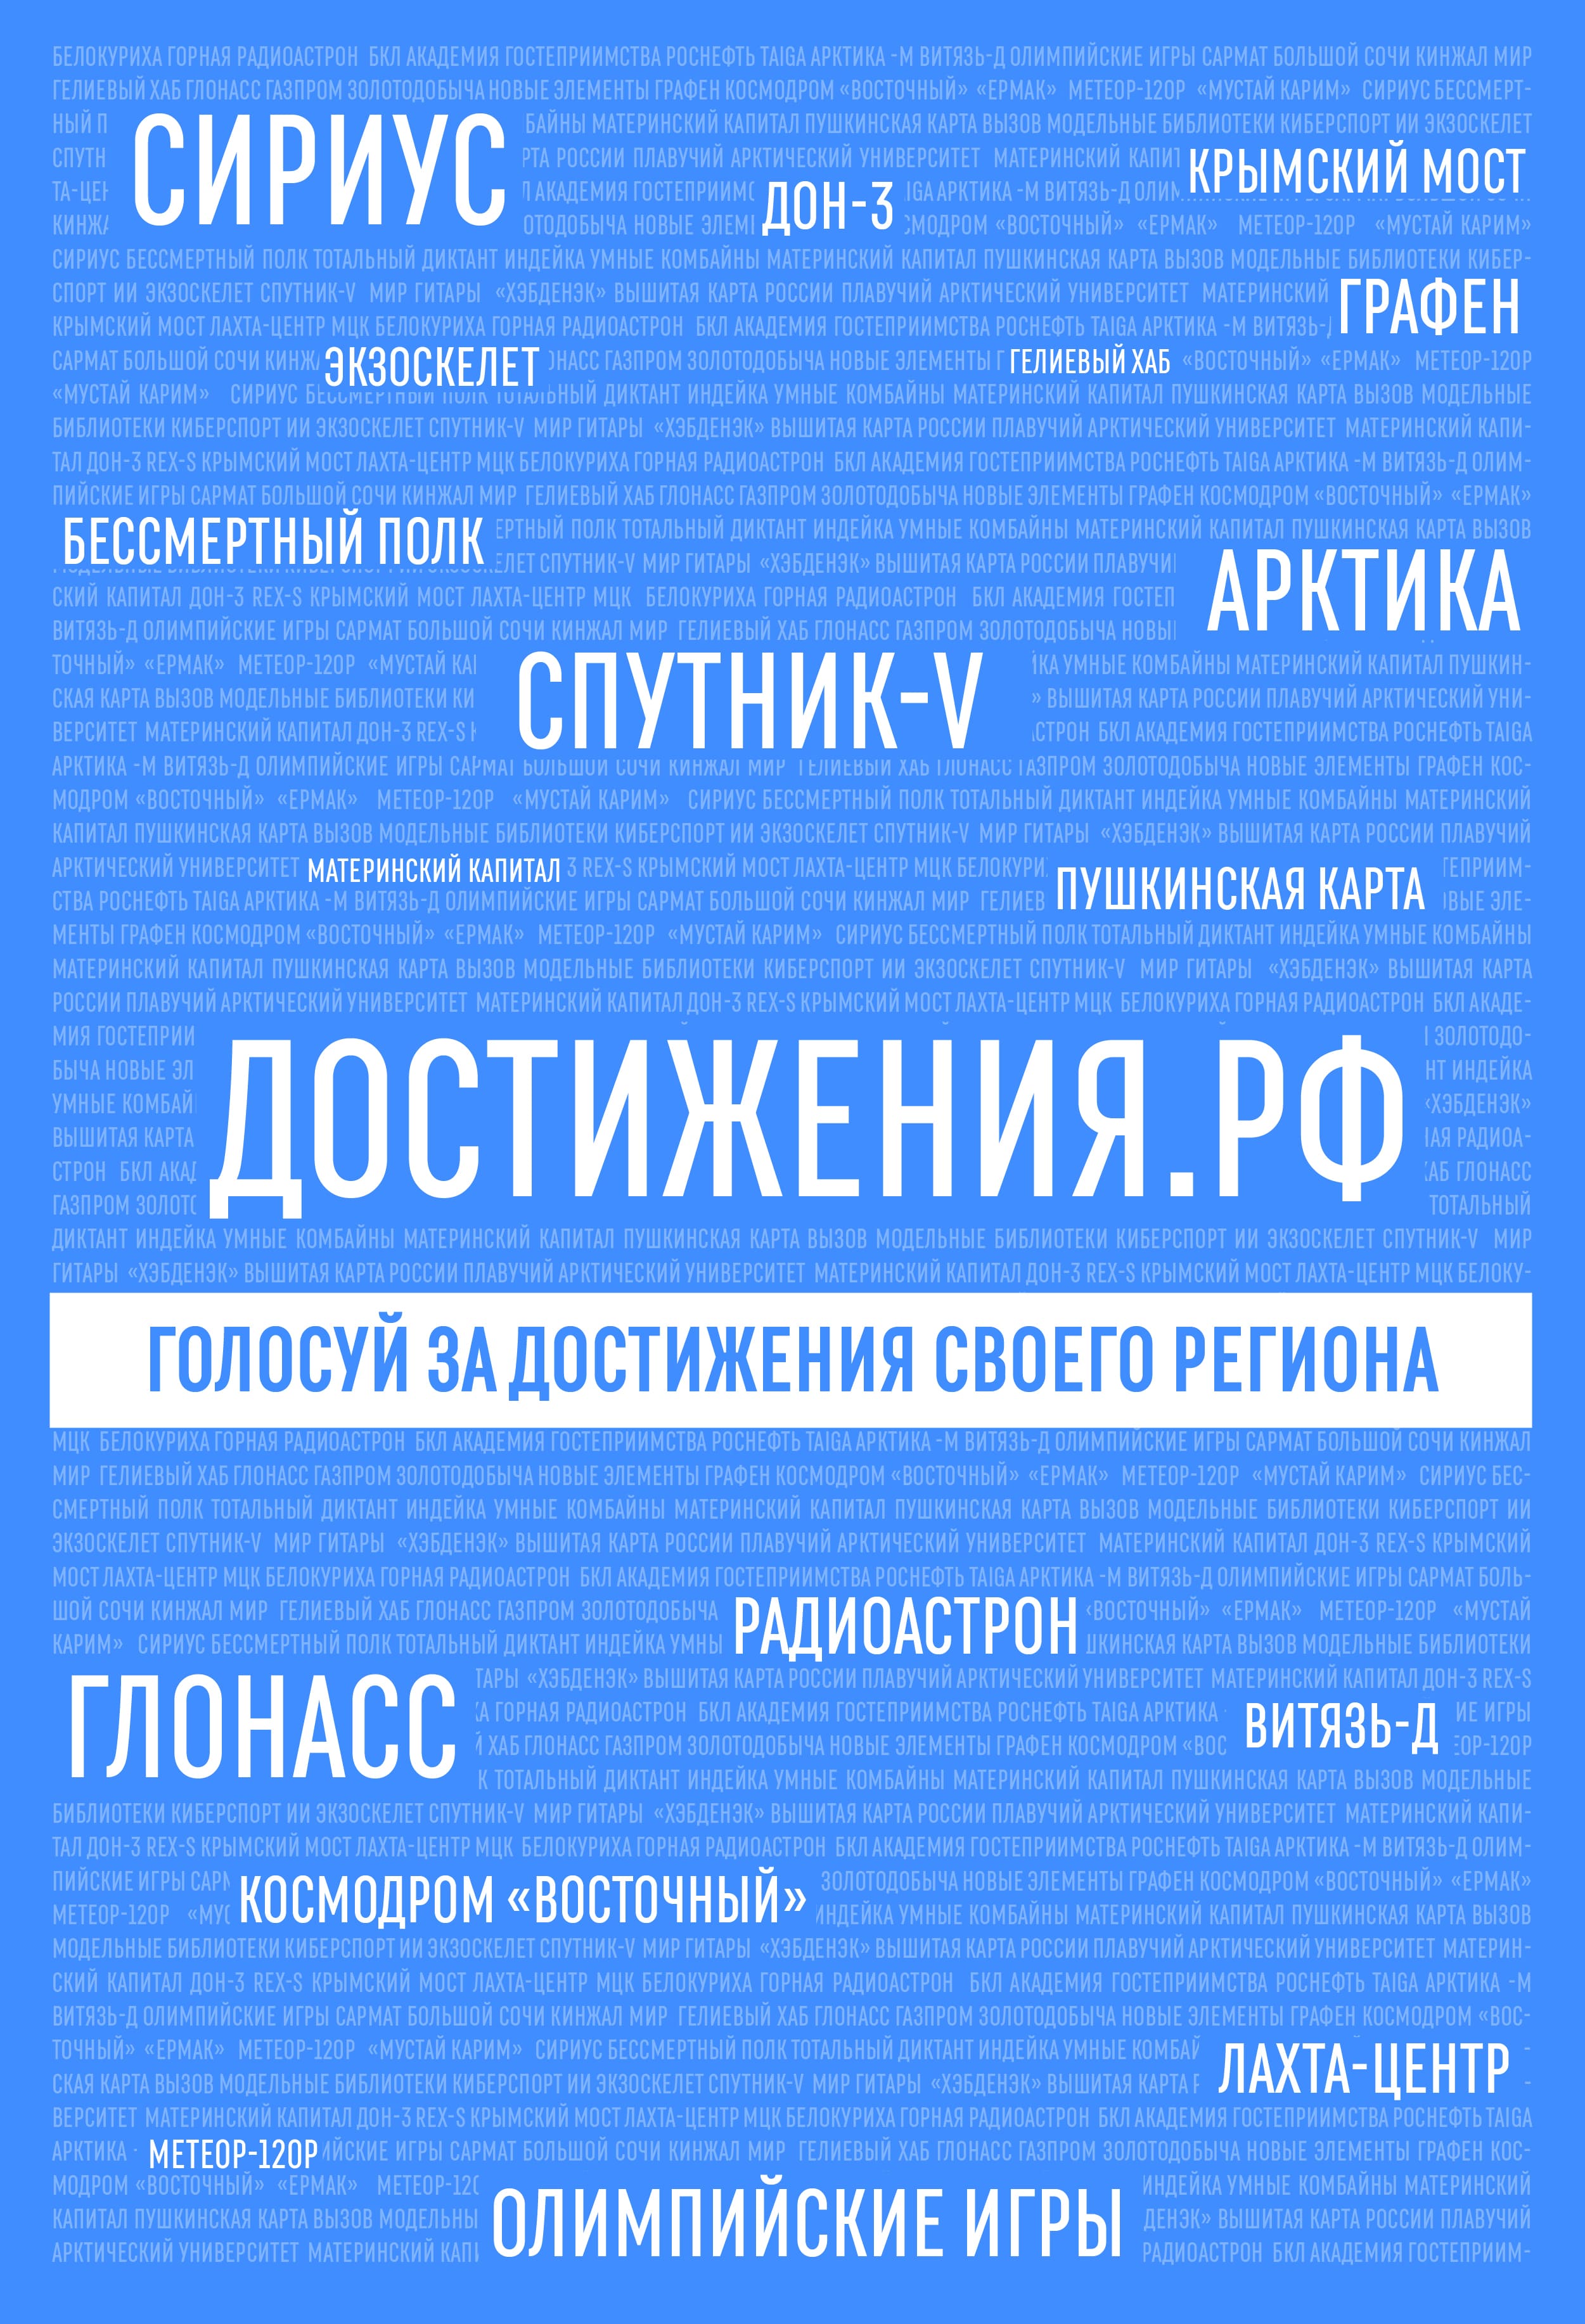 Голосуйте за объекты Свердловской области на сайте проекта Достижения.РФ